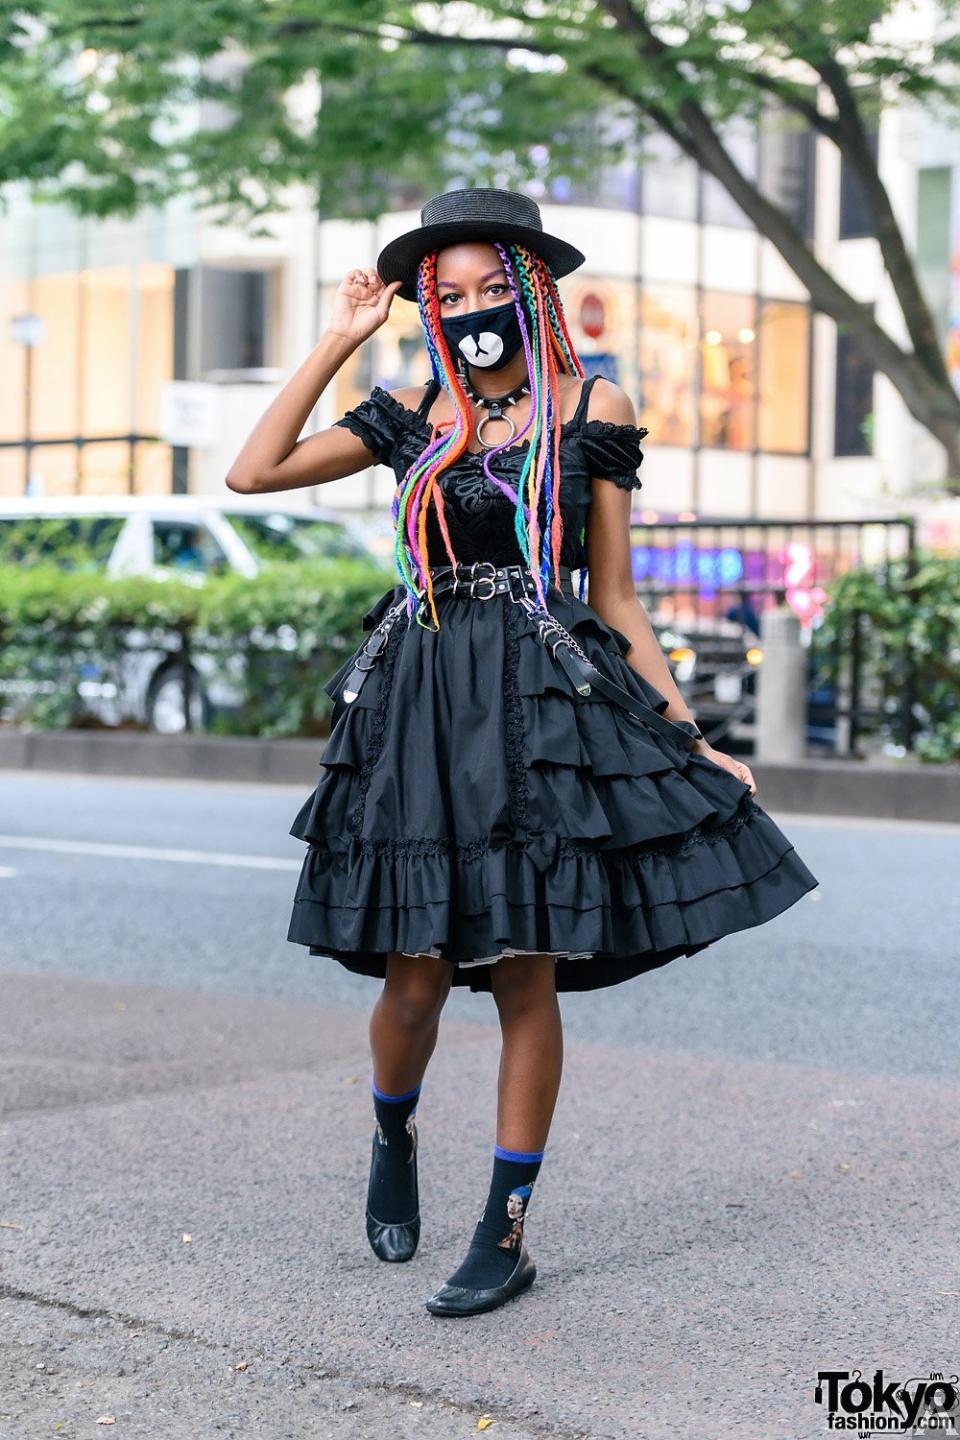 東京外国人モデル事務所アクアモデルの黒人女性モデルシエラ